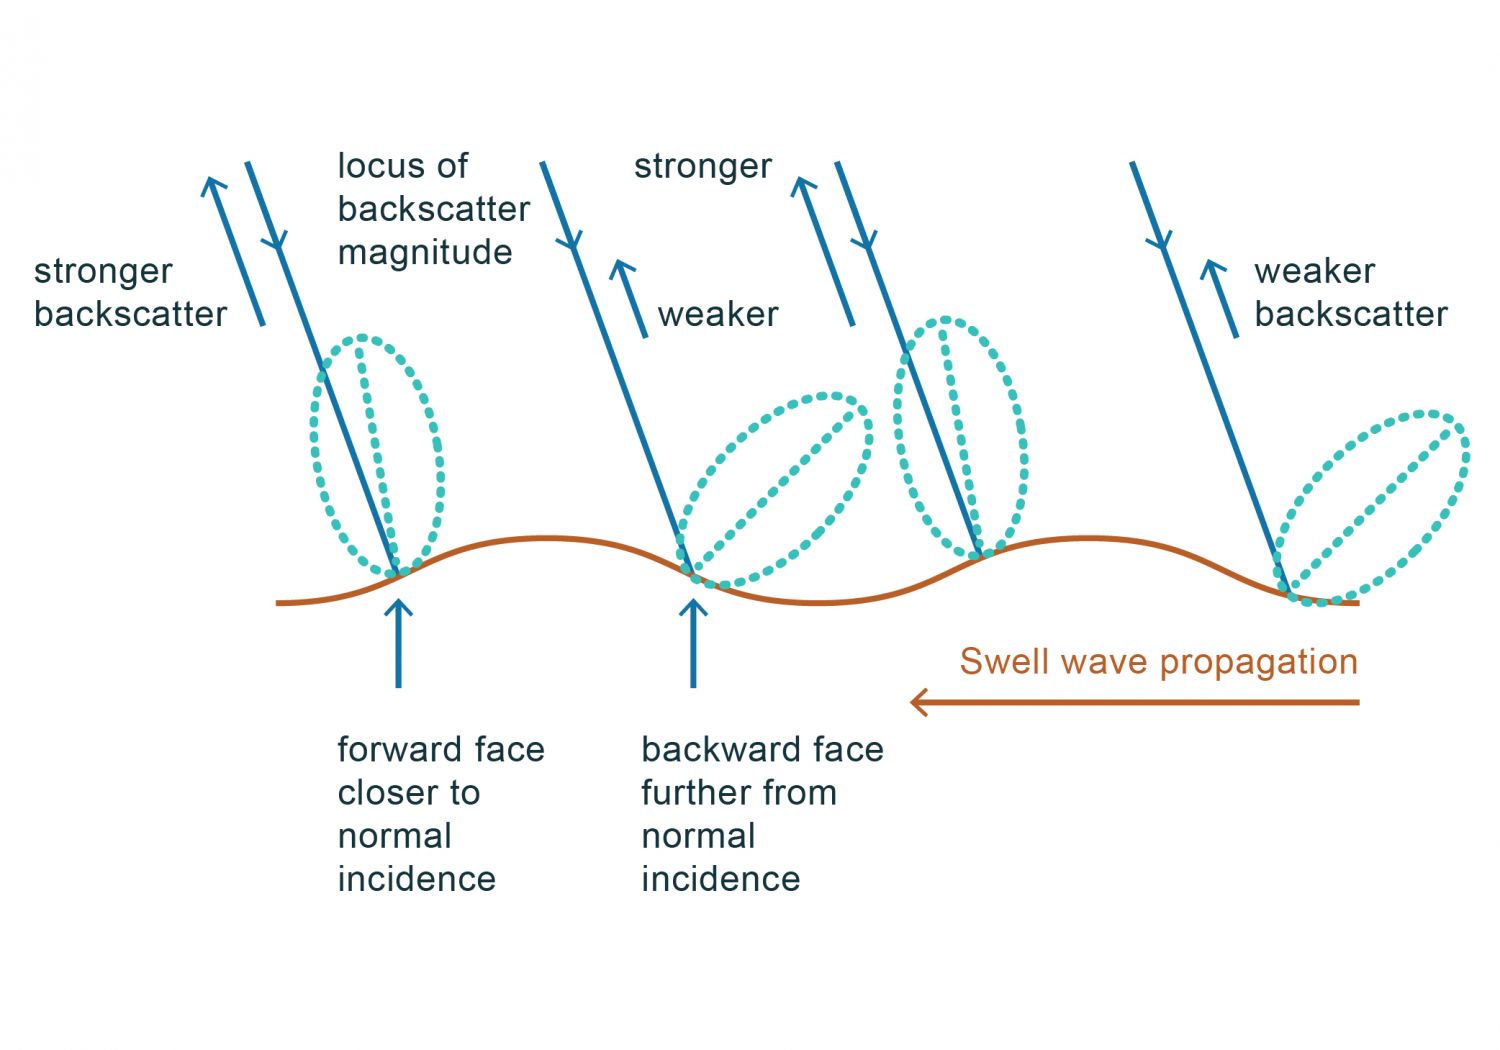 Esquema da modelação por inclinação. A intensidade do sinal retrodifundido é tanto maior quanto menor for o ângulo entre a direção de incidência e a normal à superfície (adaptado de Robinson, 2004).As ondas oceânicas também podem ter uma assinatura nas imagens SAR através dos processos de modelação hidrodinâmica ou por inclinação. A assinatura de ondas oceânicas depende da escala das ondas. As mais pequenas, a chamada rugosidade da superfície ou ondas de capilaridade, são necessárias para a criação de uma imagem SAR. Ondas com maior escala, as chamadas ondas de superfície, são geradas pelo vento, pelo que têm direção de propagação alinhada com a do vento. Poderão ter uma assinatura nas imagens SAR caso se propaguem numa direção que tenha componente na direção de alcance. A assinatura destas ondas de maior escala pode ser criada por modelação por inclinação da superfície. Neste caso a passagem das ondas irá provocar uma inclinação da superfície que irá modular a intensidade do eco, sendo que a intensidade do sinal retrodifundido aumenta com a diminuição do ângulo de incidência, i.e., quando o ângulo de incidência da radiação está próxima da perpendicular à superfície do mar. Como se pode ver no esquema da figura quanto menor o ângulo (theta), maior a intensidade do sinal retrodifundido, o que acontece na face da onda mais próxima do sensor. Assim, ondas capazes de gerar este tipo de assinaturas são visíveis em imagens SAR como linhas alternadamente mais claras e mais escuras. Este tipo de modulação não depende da rugosidade da superfície do mar, podendo gerar uma assinatura em imagens SAR mesmo com ausência de vento. É por esta razão que é possível retirar de uma imagem SAR informação do campo de agitação marítima ou swell. A utilização deste ficheiro é regulada nos termos da licença Creative Commons Attribution 4.0 (CC BY-NC-ND 4.0, https://creativecommons.org/licenses/by-nc-nd/4.0/)